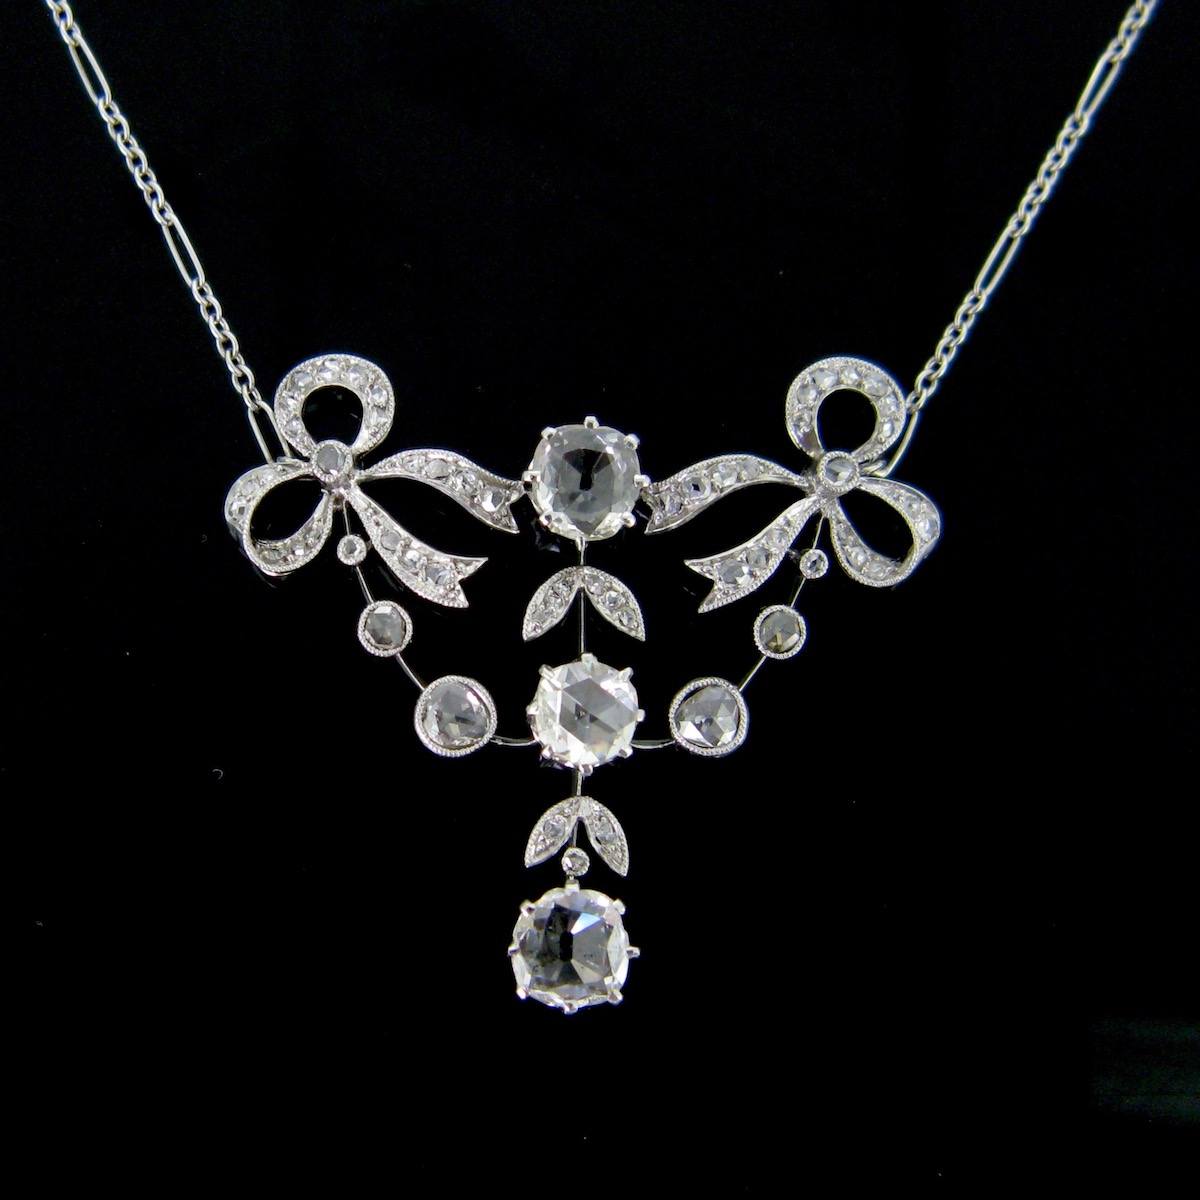 Rose Cut Diamond Pendant | canoeracing.org.uk